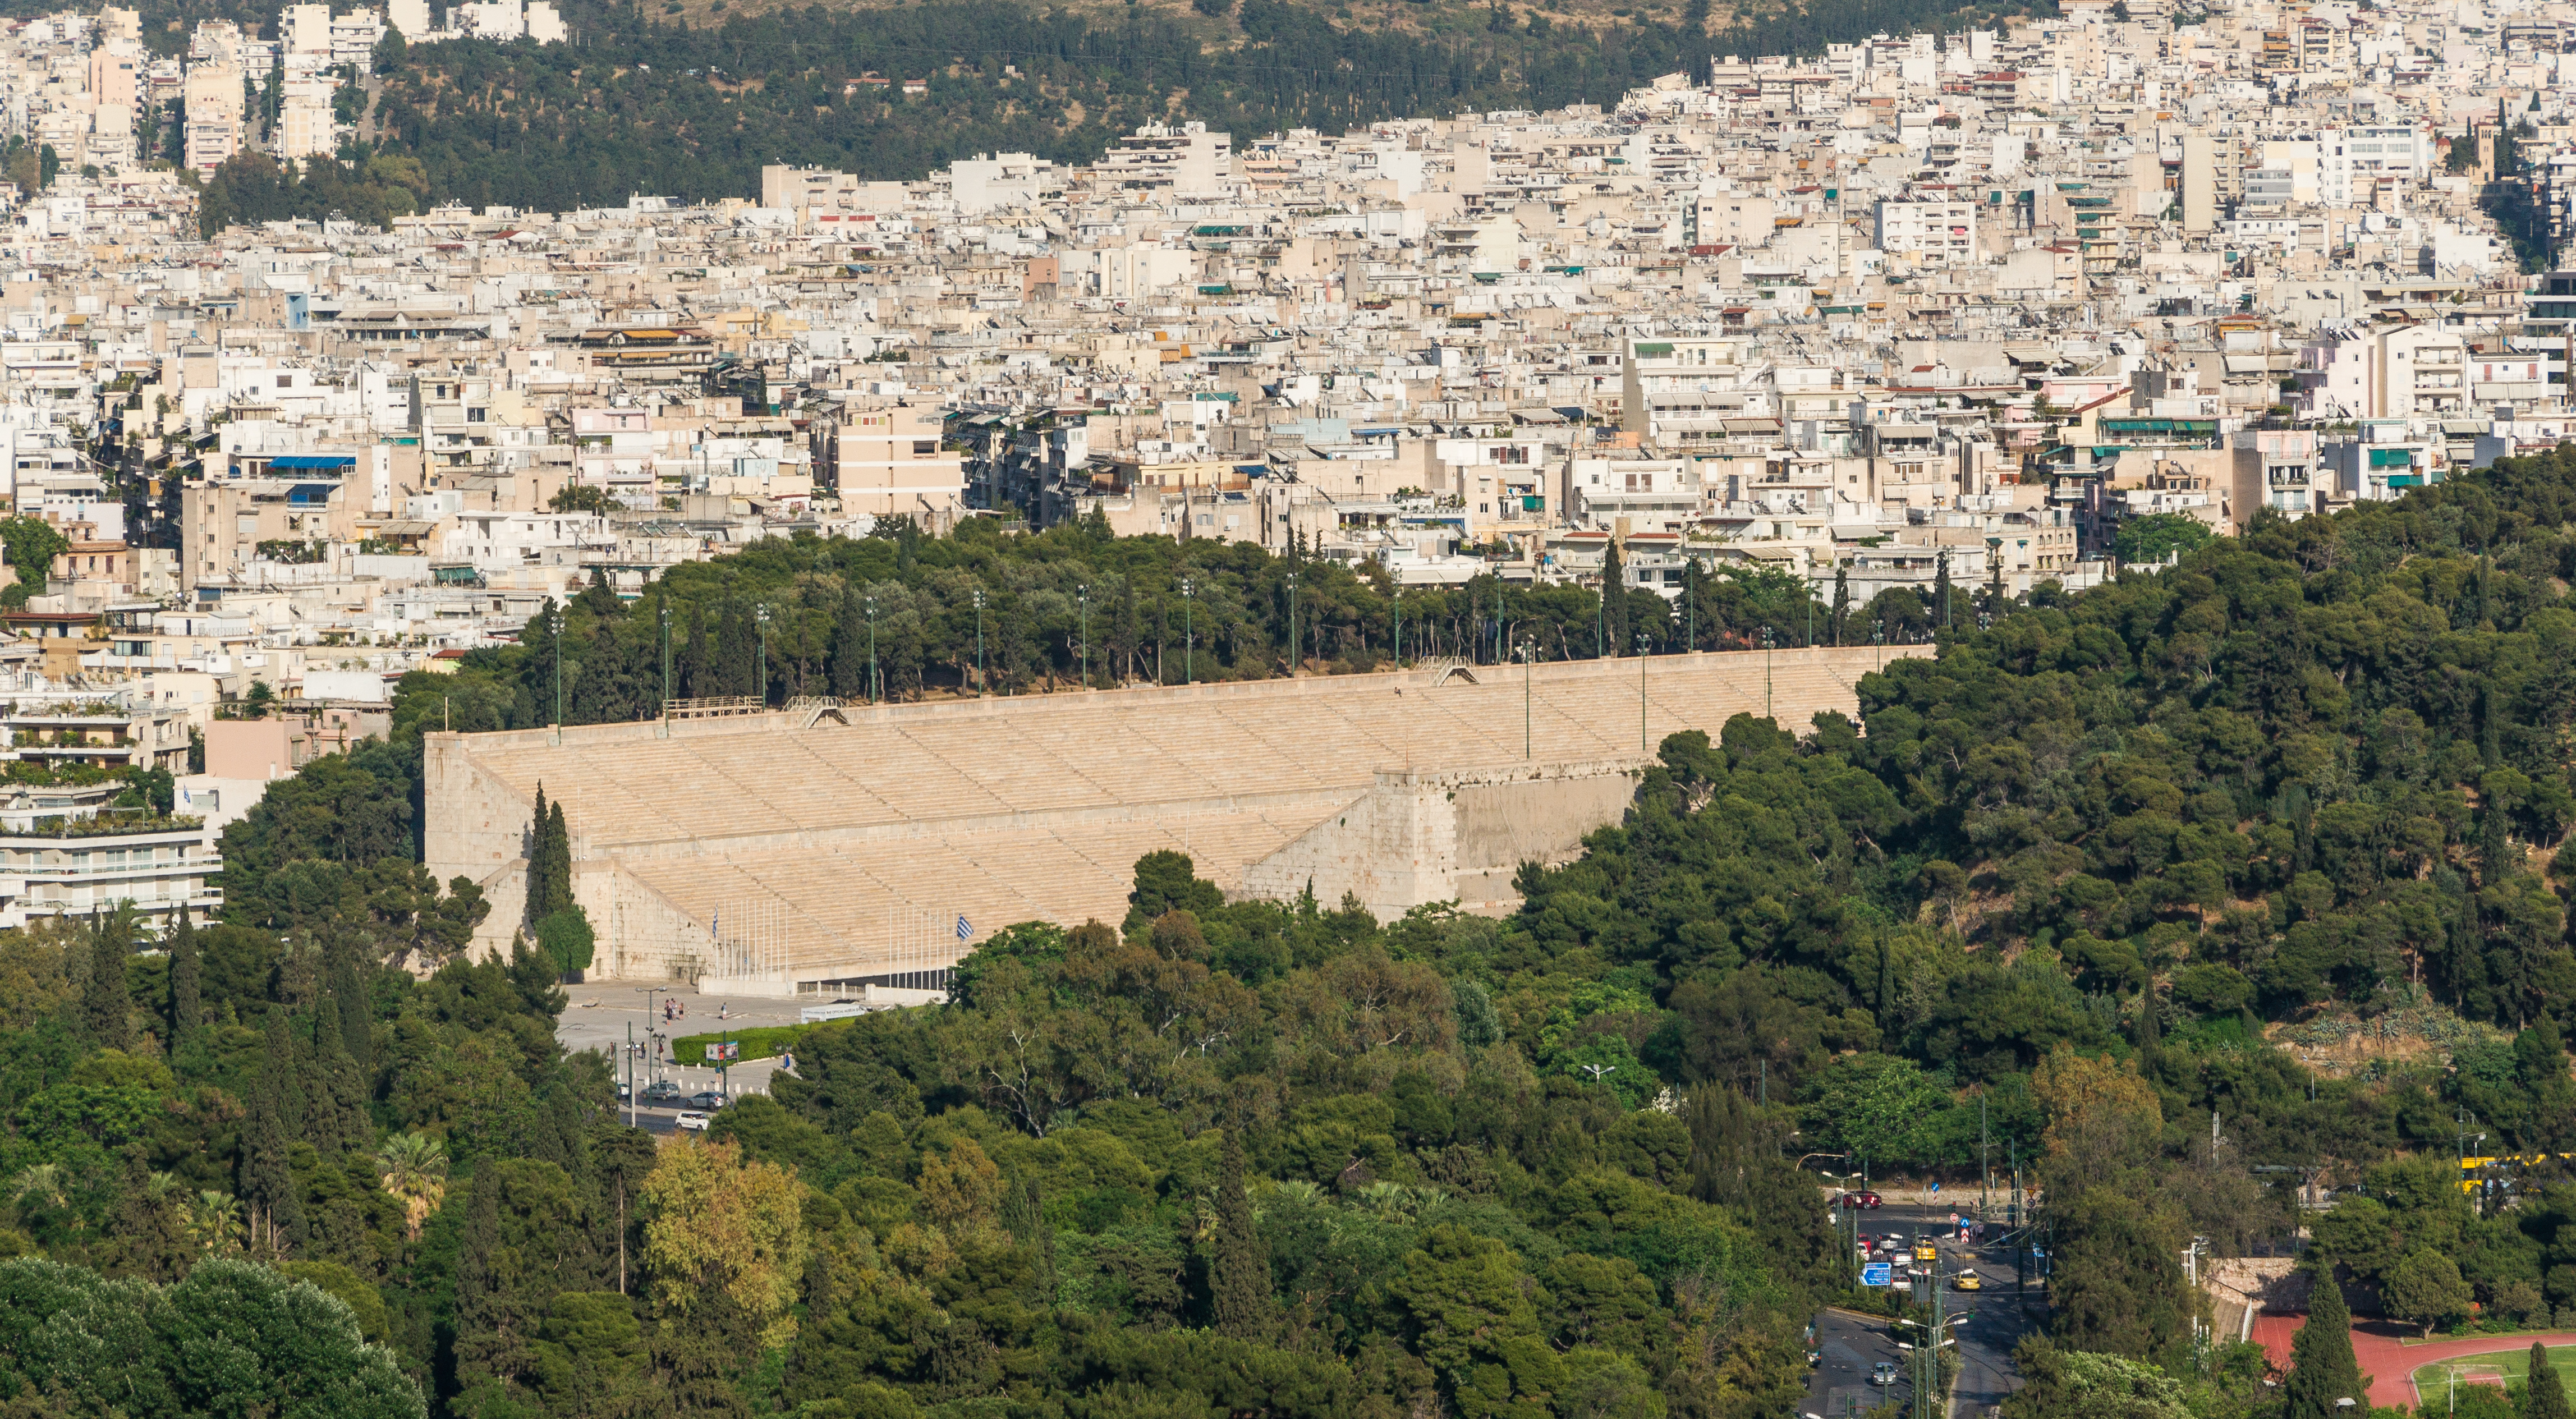 Panathenaic stadium, Pangrati borrough, from Acropolis, Athens, Greece